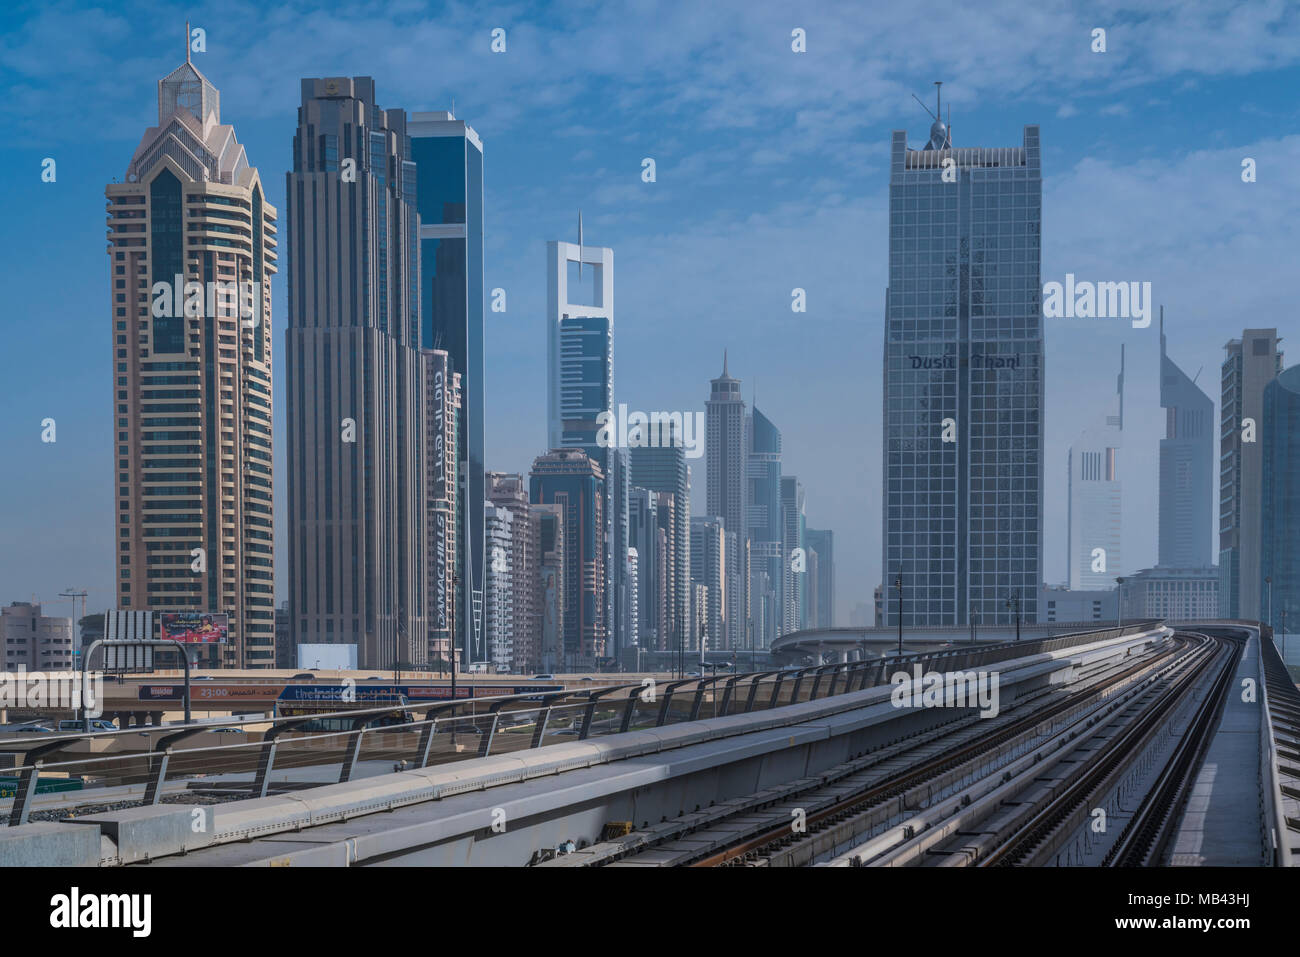 Les immeubles de grande hauteur et la voie de métro au centre-ville de Dubaï, aux Émirats arabes unis, au Moyen-Orient. Banque D'Images